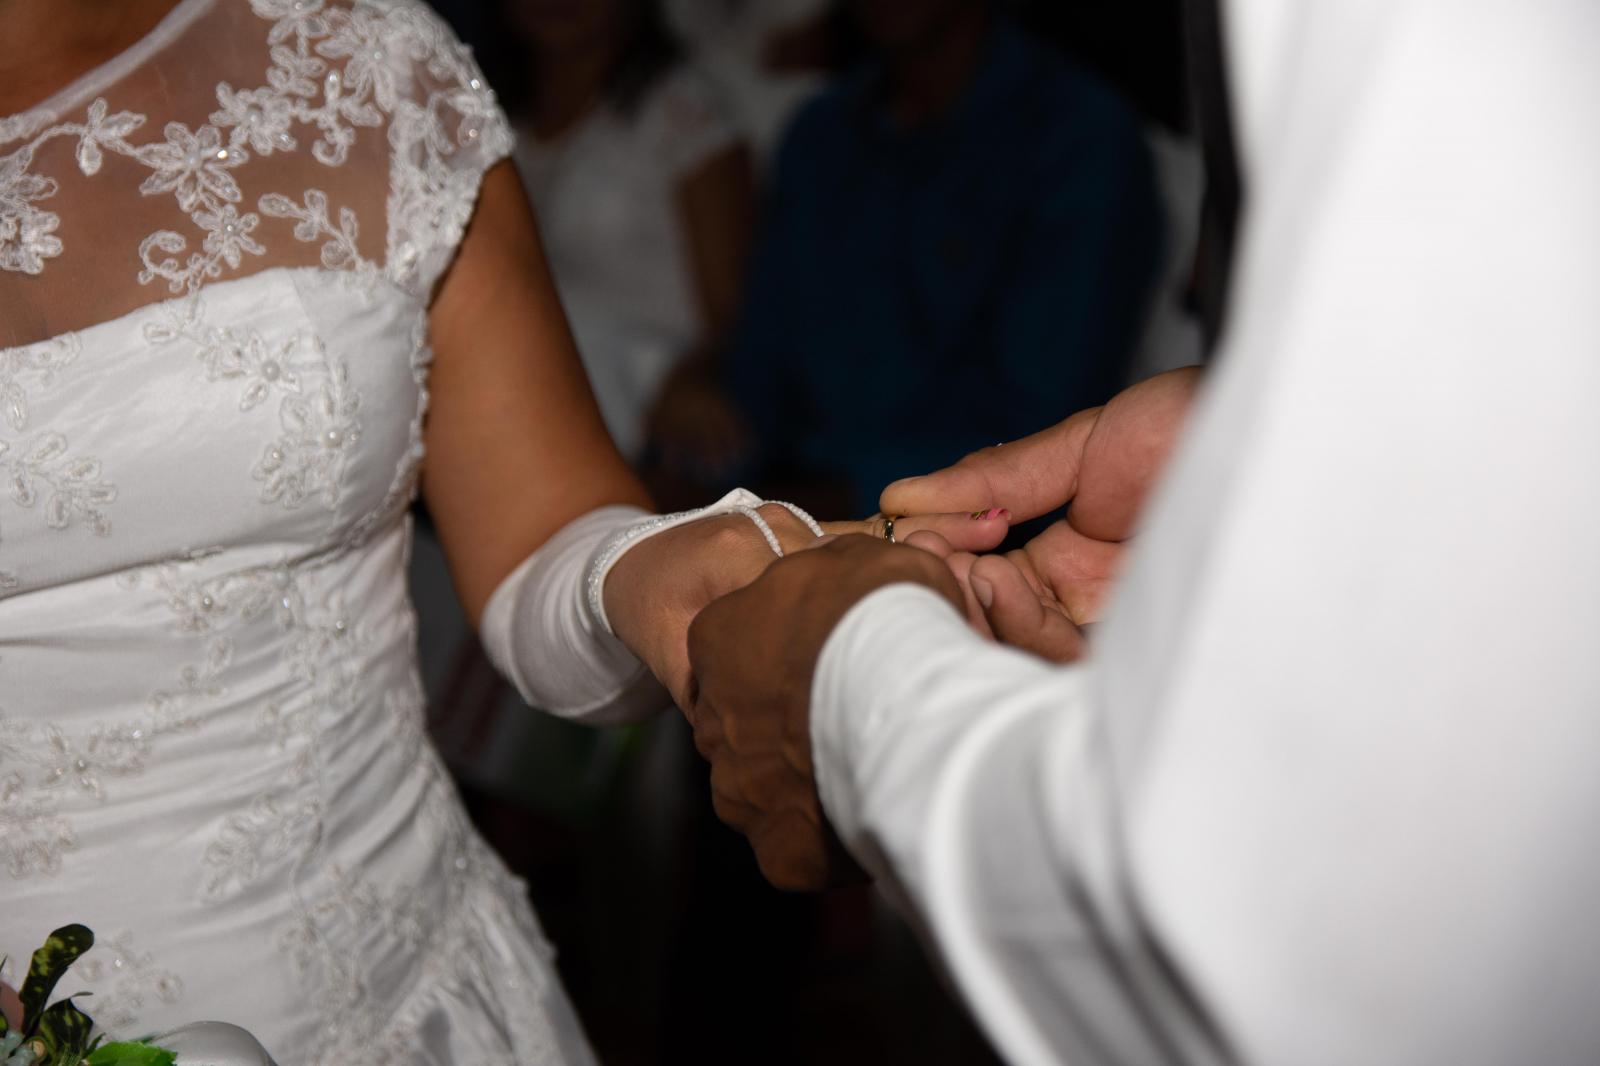 79 casais oficializaram sua união no Casamento Comunitário em Governador Nunes Freire